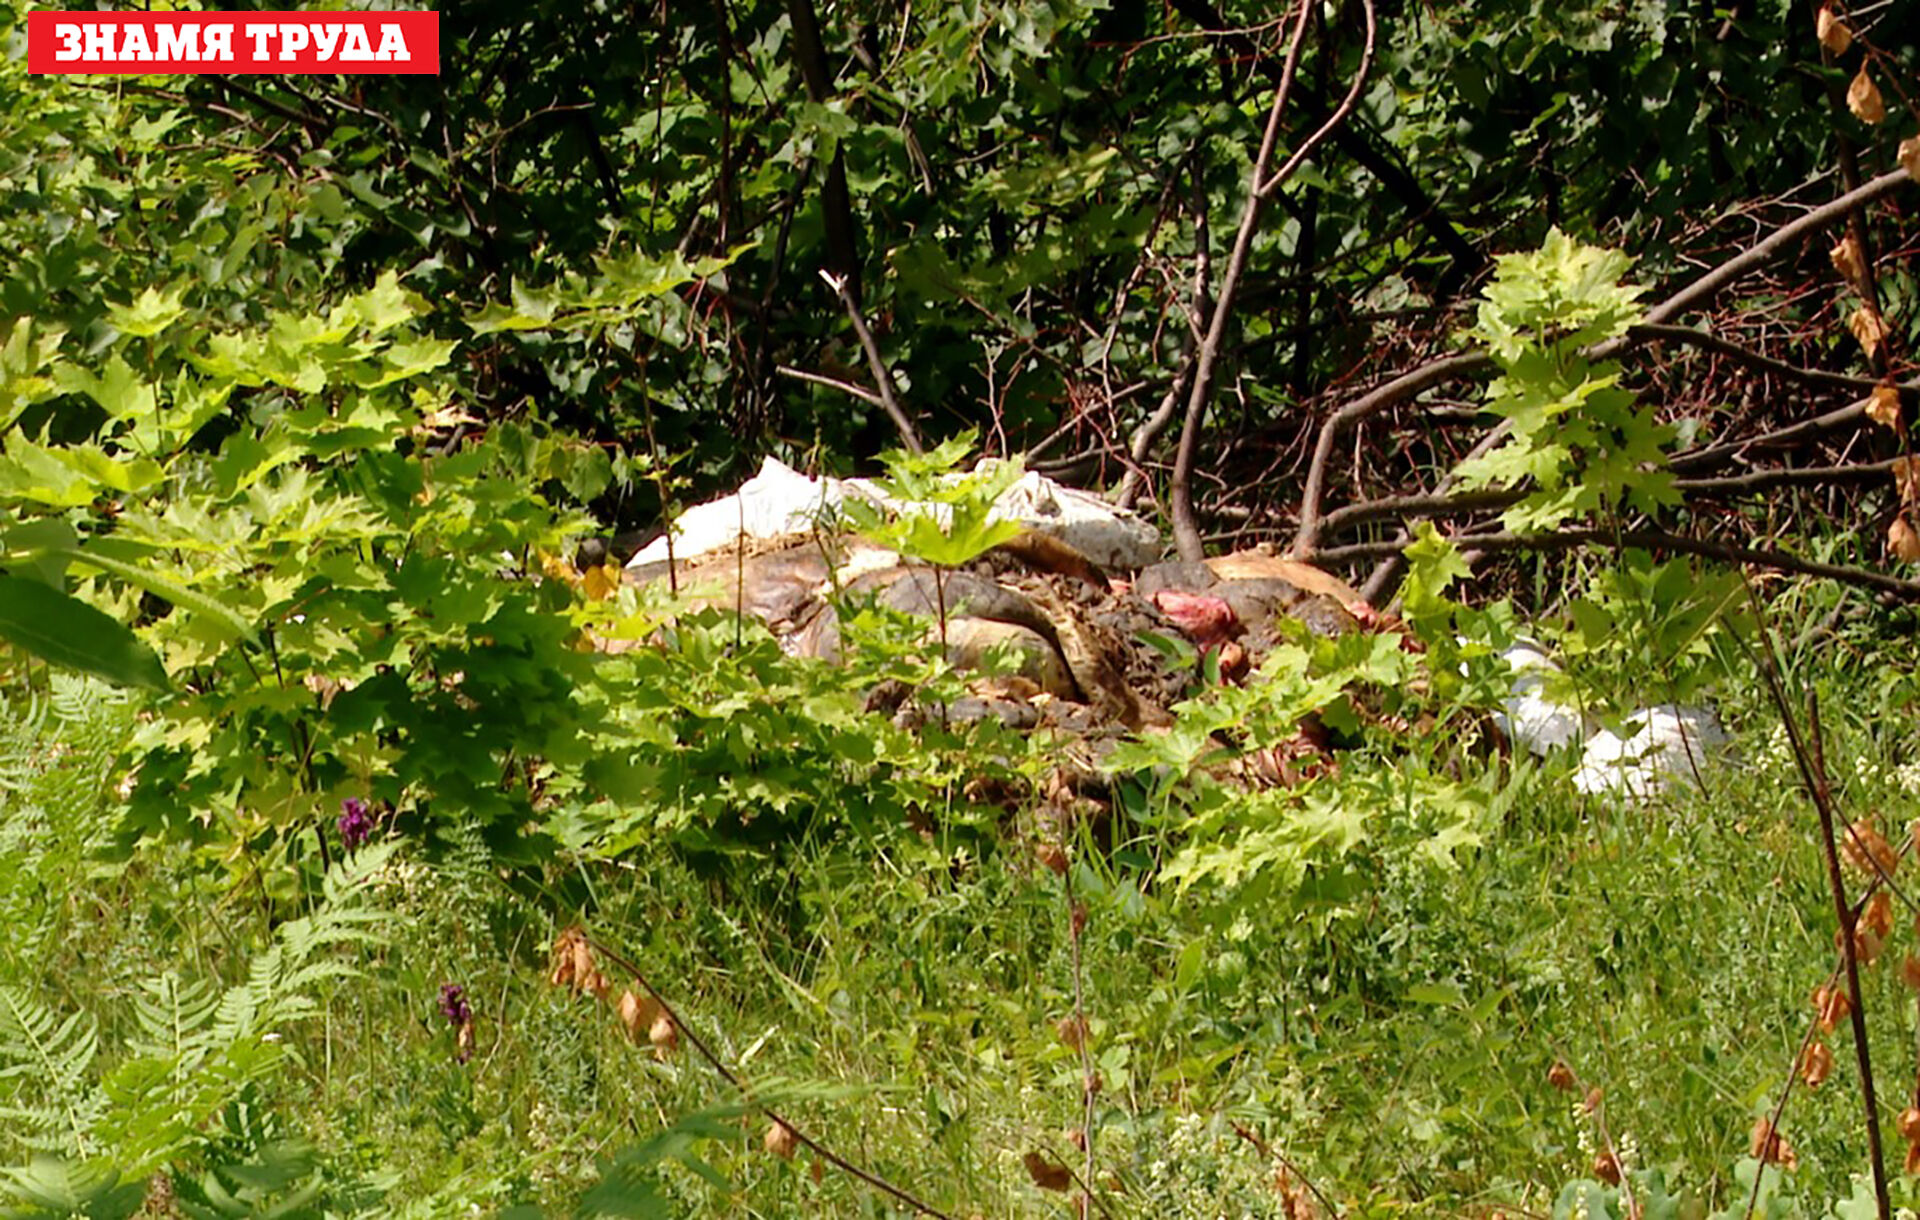 Экологическое ЧП: охотинспекторы Альметьевска обнаружили в лесу незаконный скотомогильник